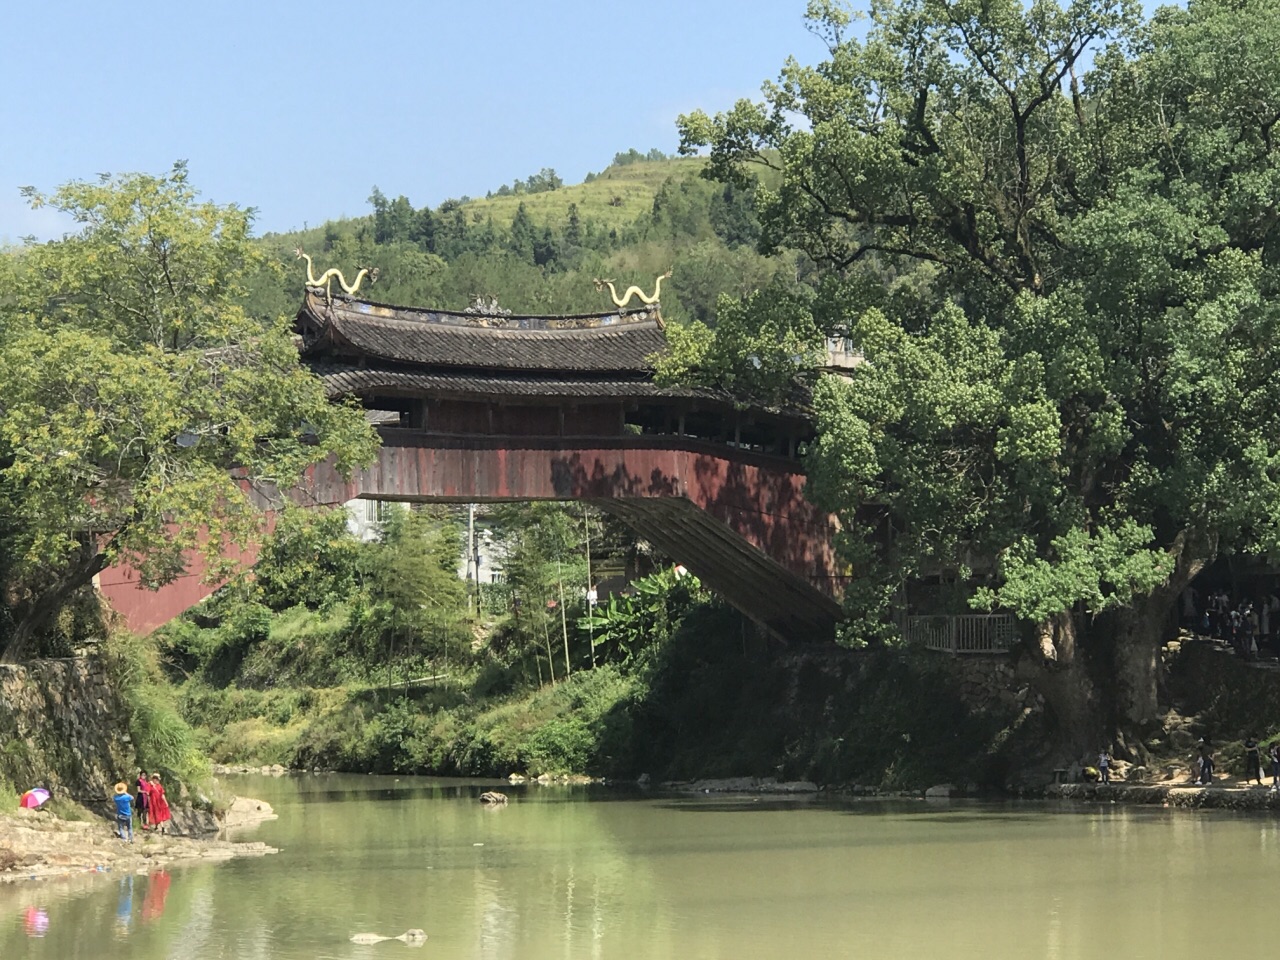 中国版的廊桥遗梦